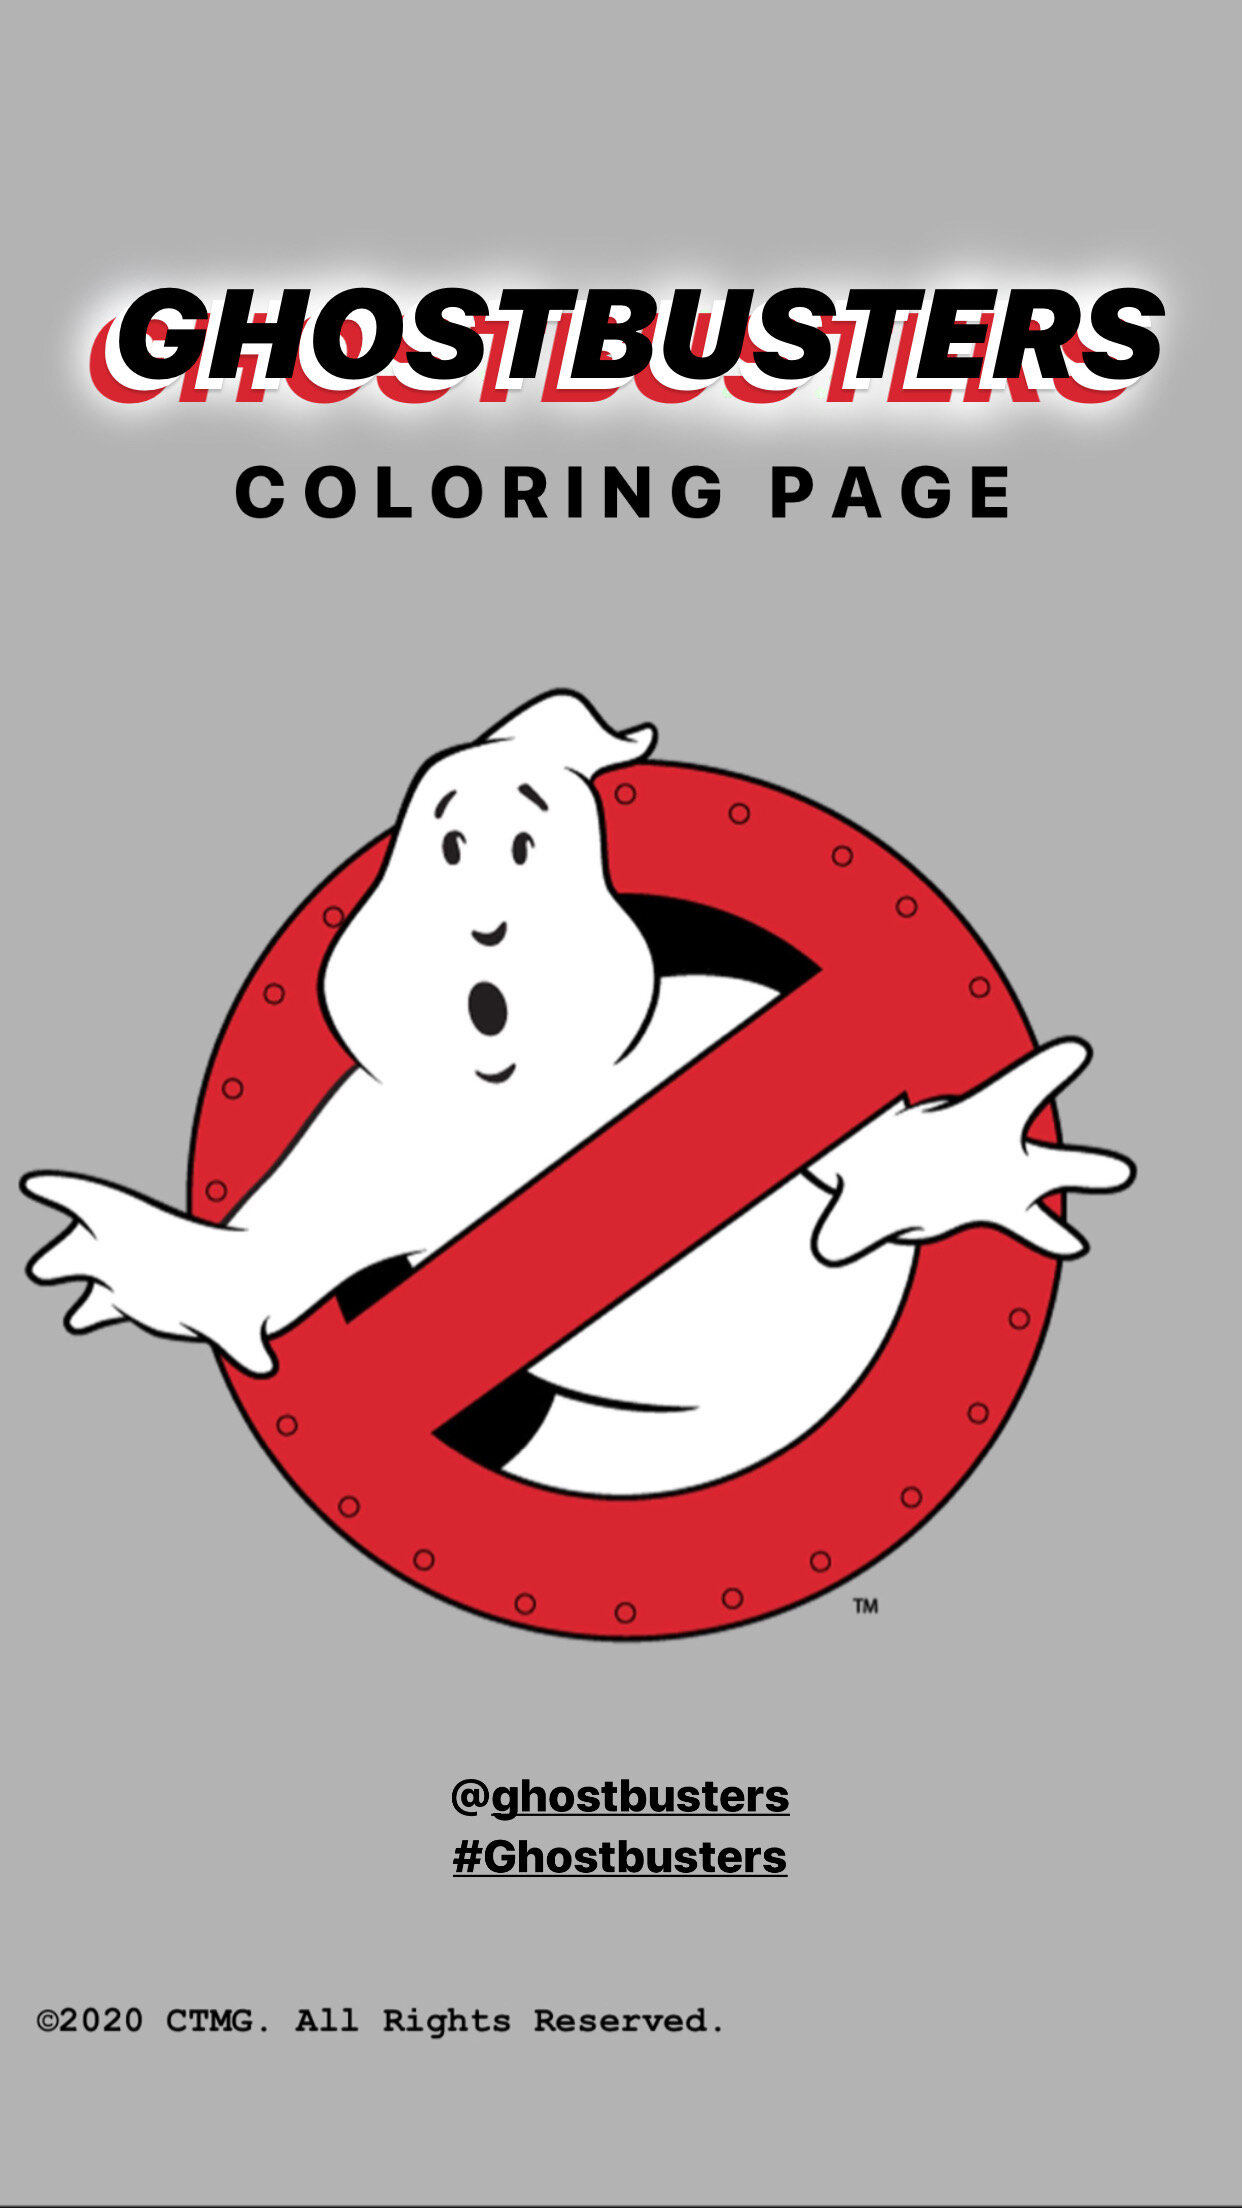 Ghostbusters_ColoringPage_Mockup_Slide1_03.JPG